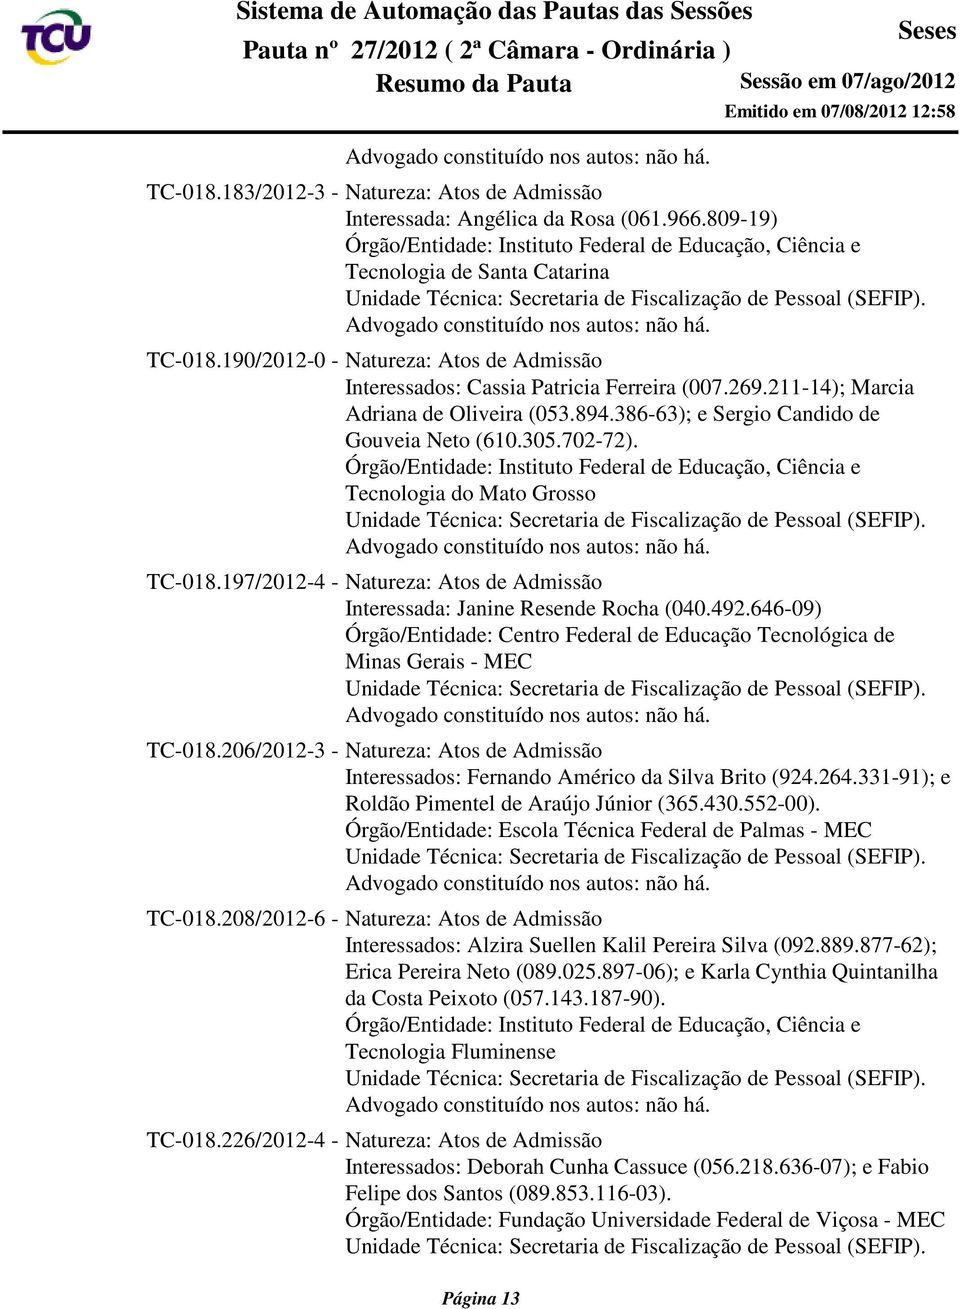 Órgão/Entidade: Instituto Federal de Educação, Ciência e Tecnologia do Mato Grosso TC-018.197/2012-4 - Natureza: Atos de Admissão Interessada: Janine Resende Rocha (040.492.